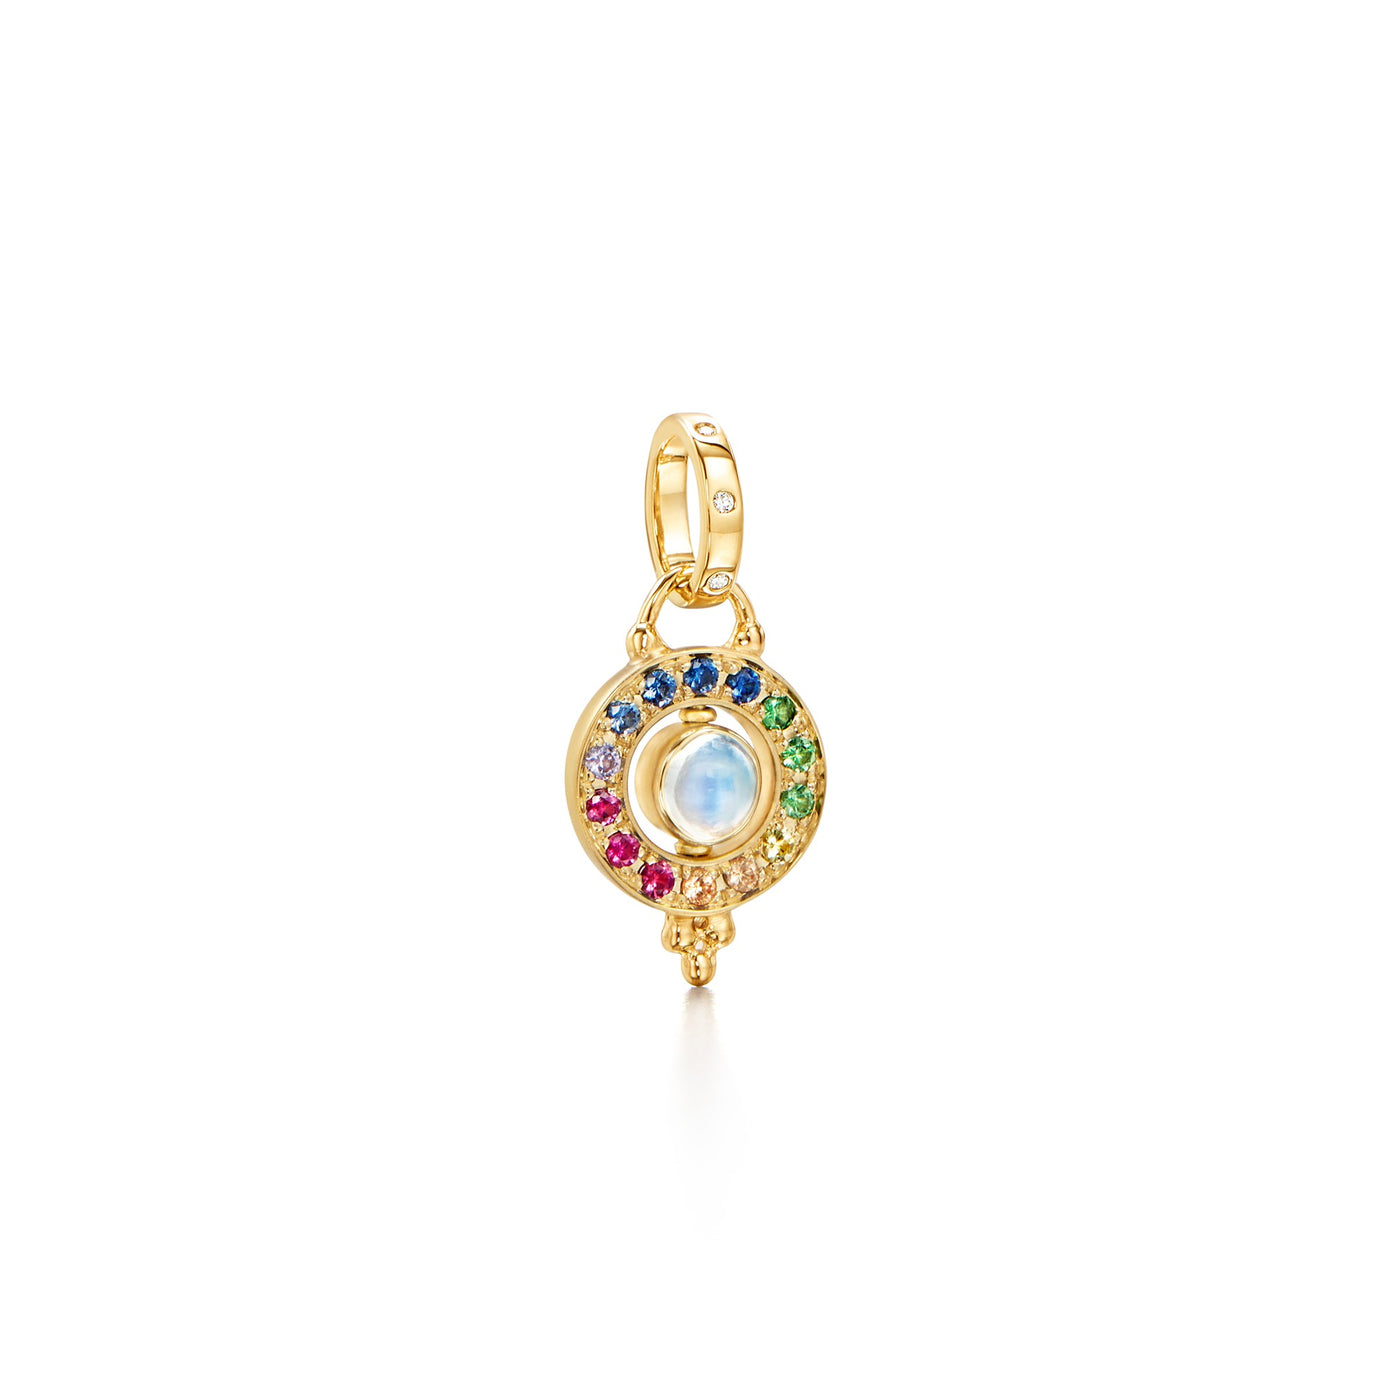 Mini Orbit Pendant with Mixed Sapphires & Moonstone